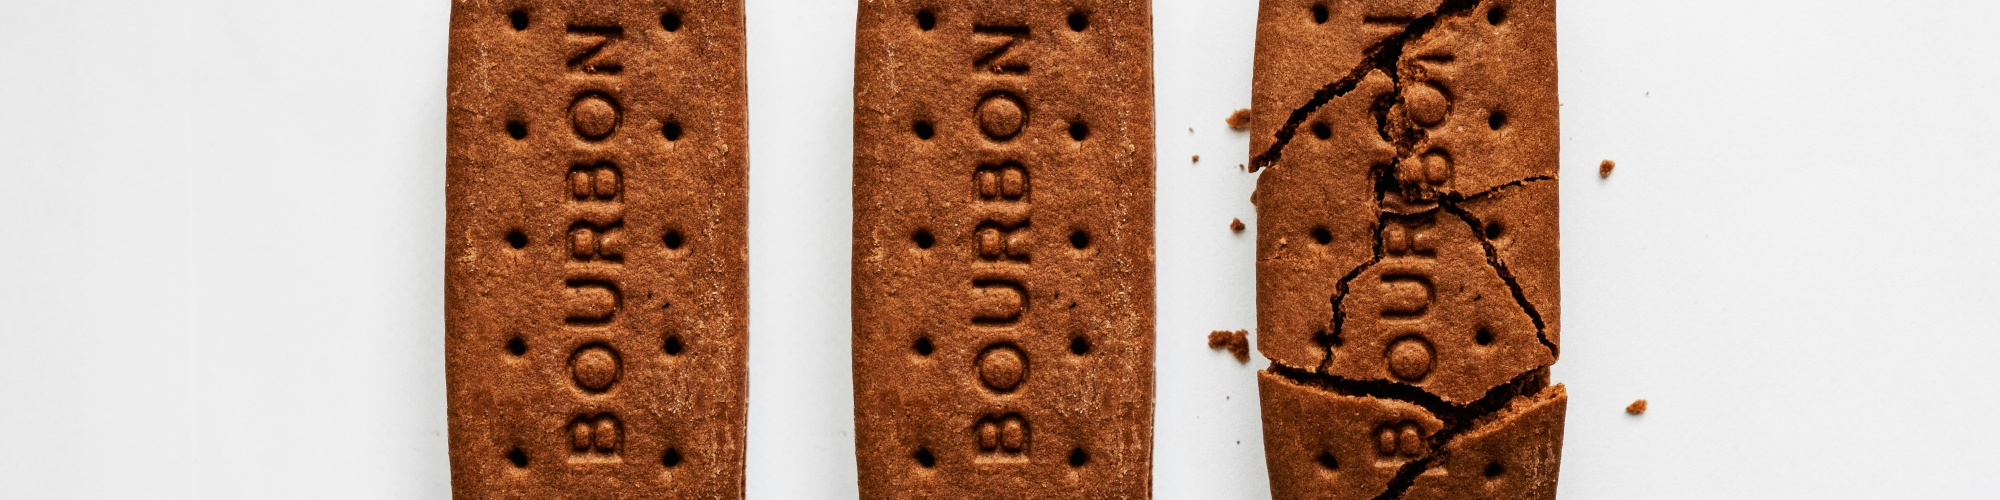 bourbon biscuits photo by Ben Simmonds on Unsplash